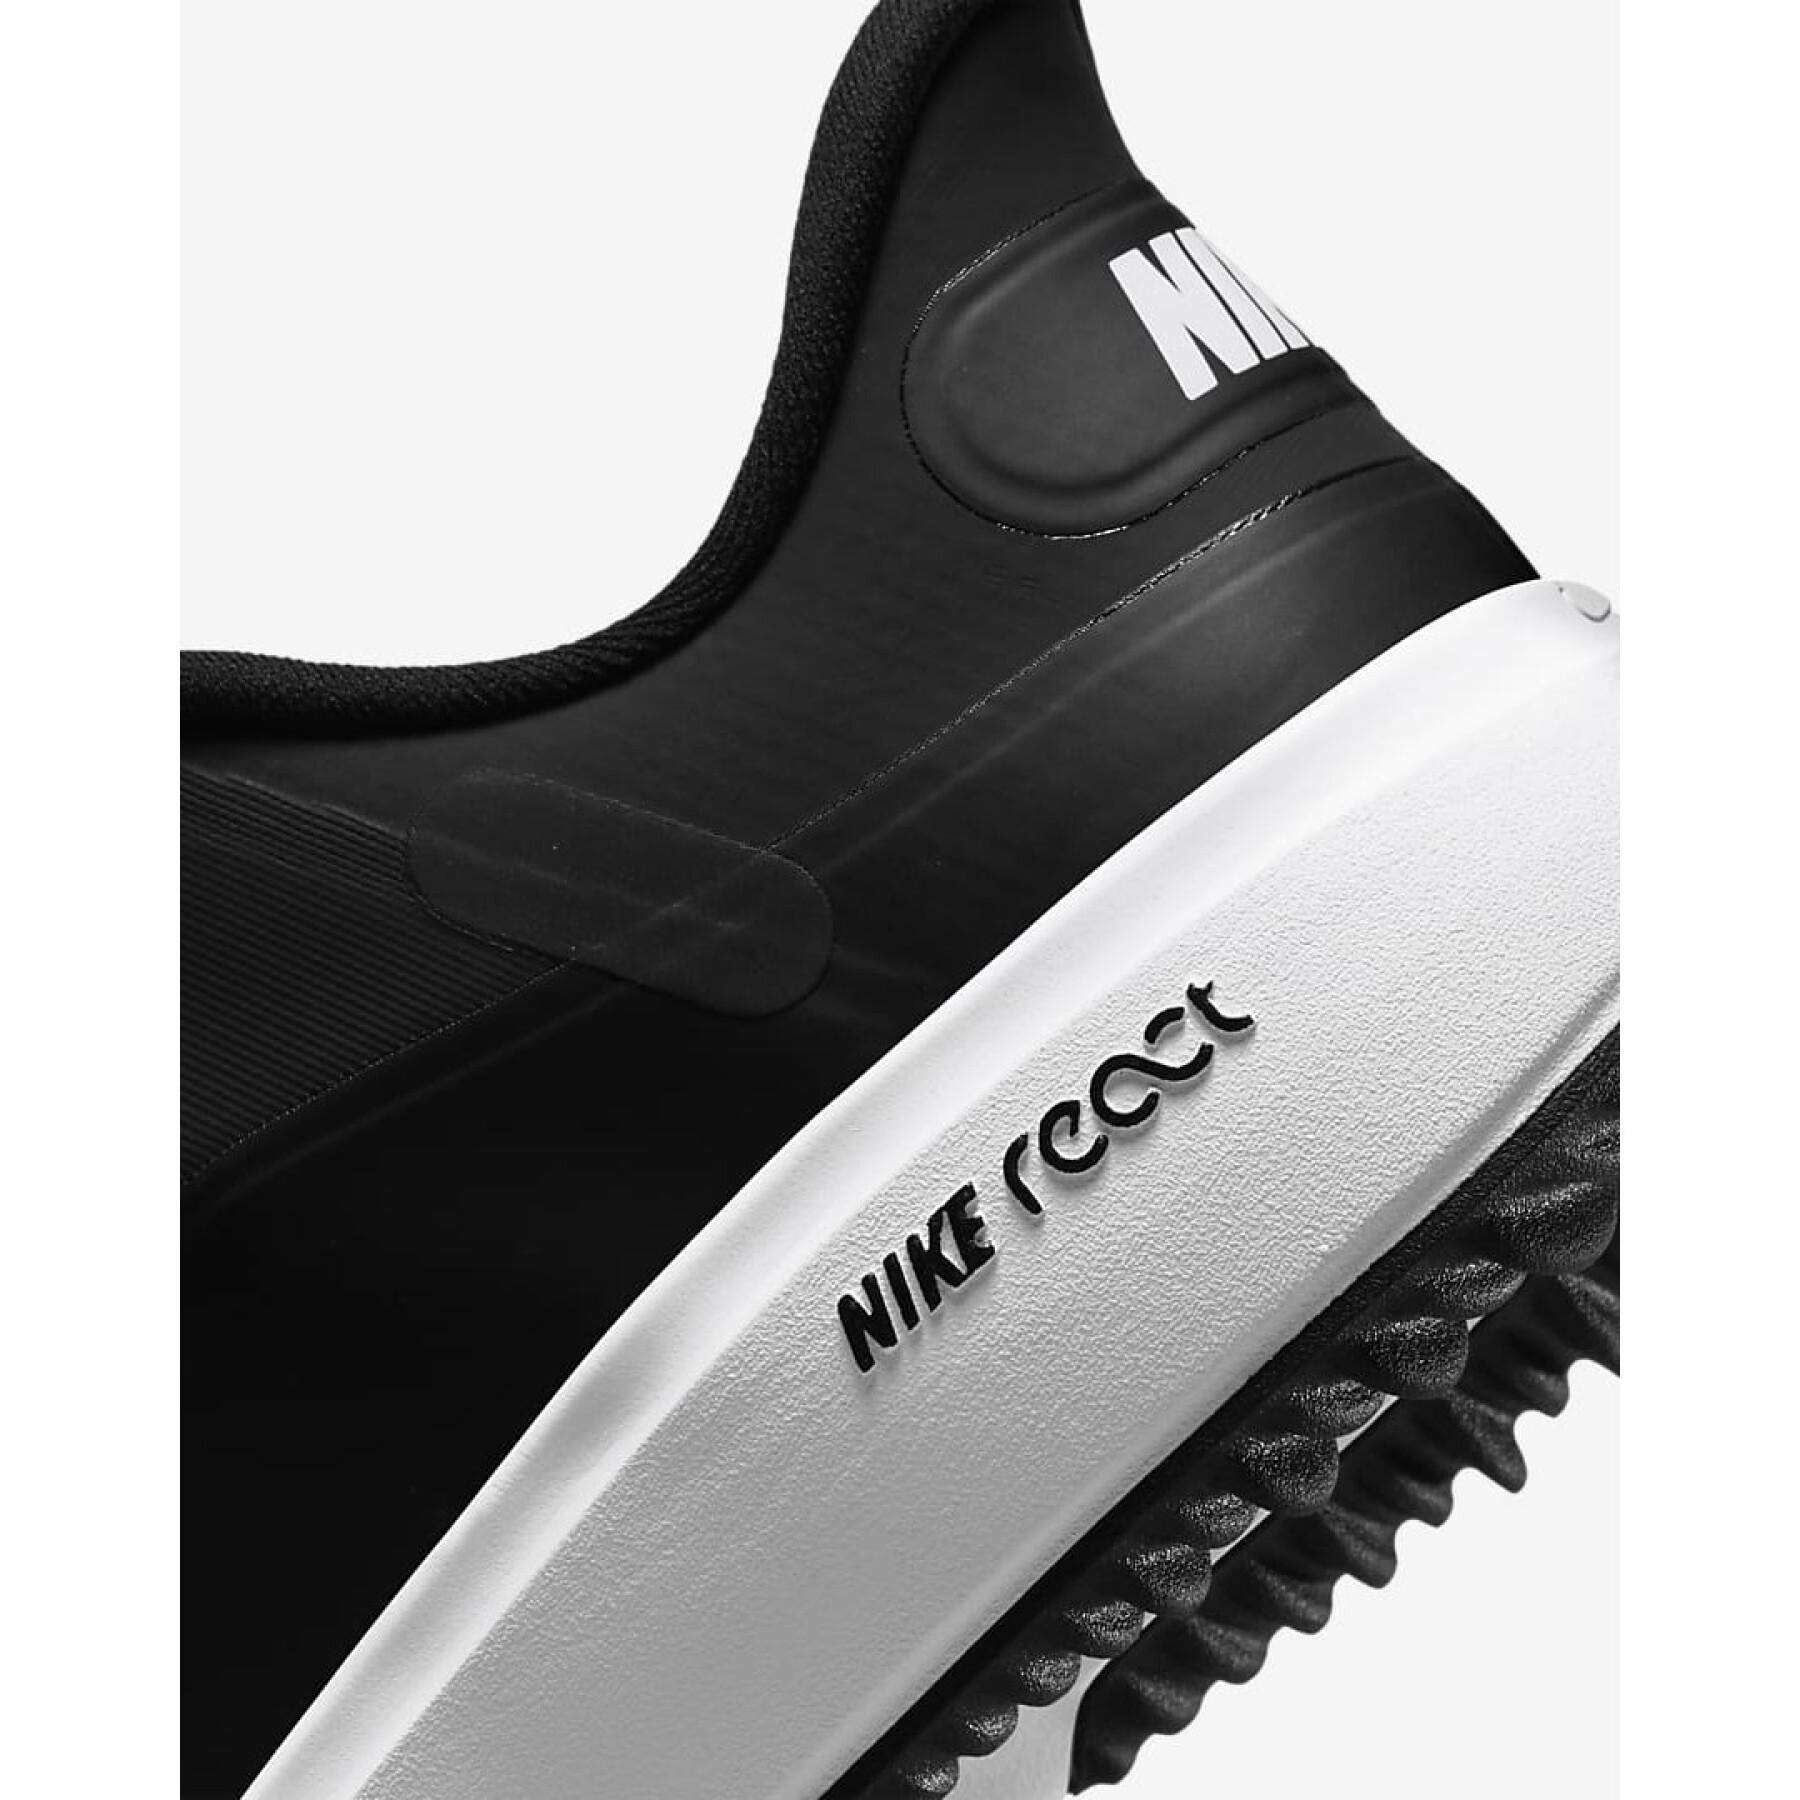 Damskie buty do golfa Nike React Ace Tour